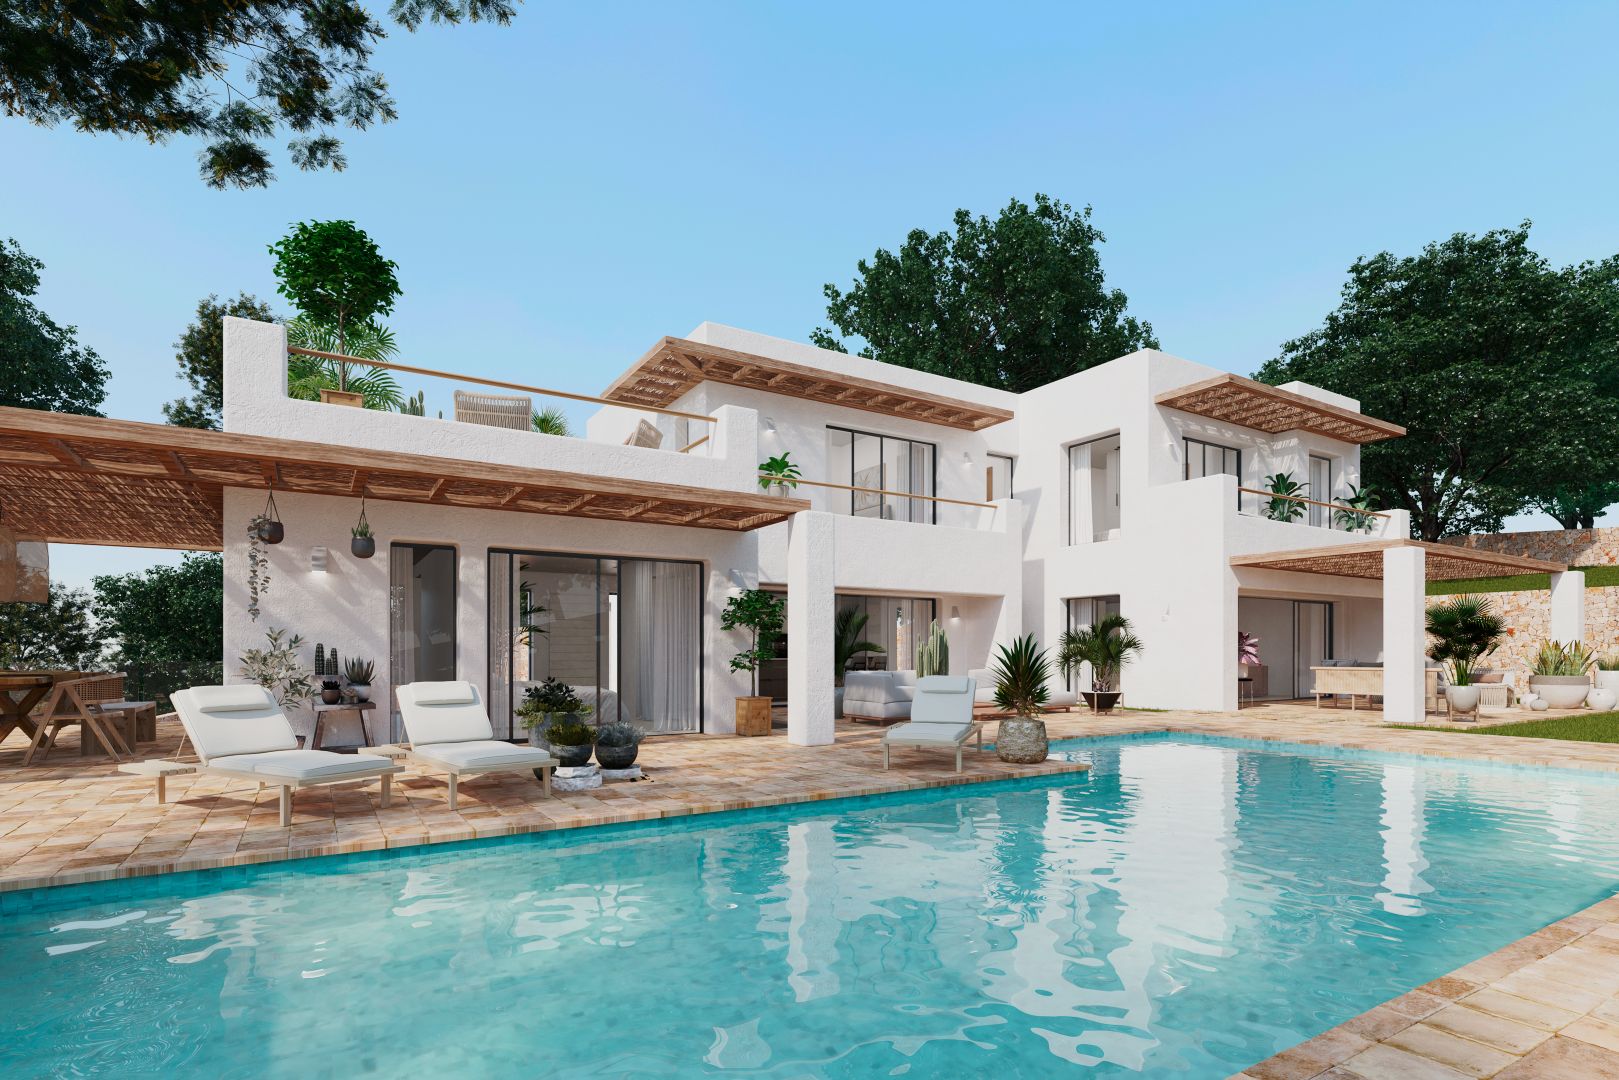 Luxuriöses Wohnen enthüllt: Opulente mediterrane Villa mit spektakulärer Aussicht